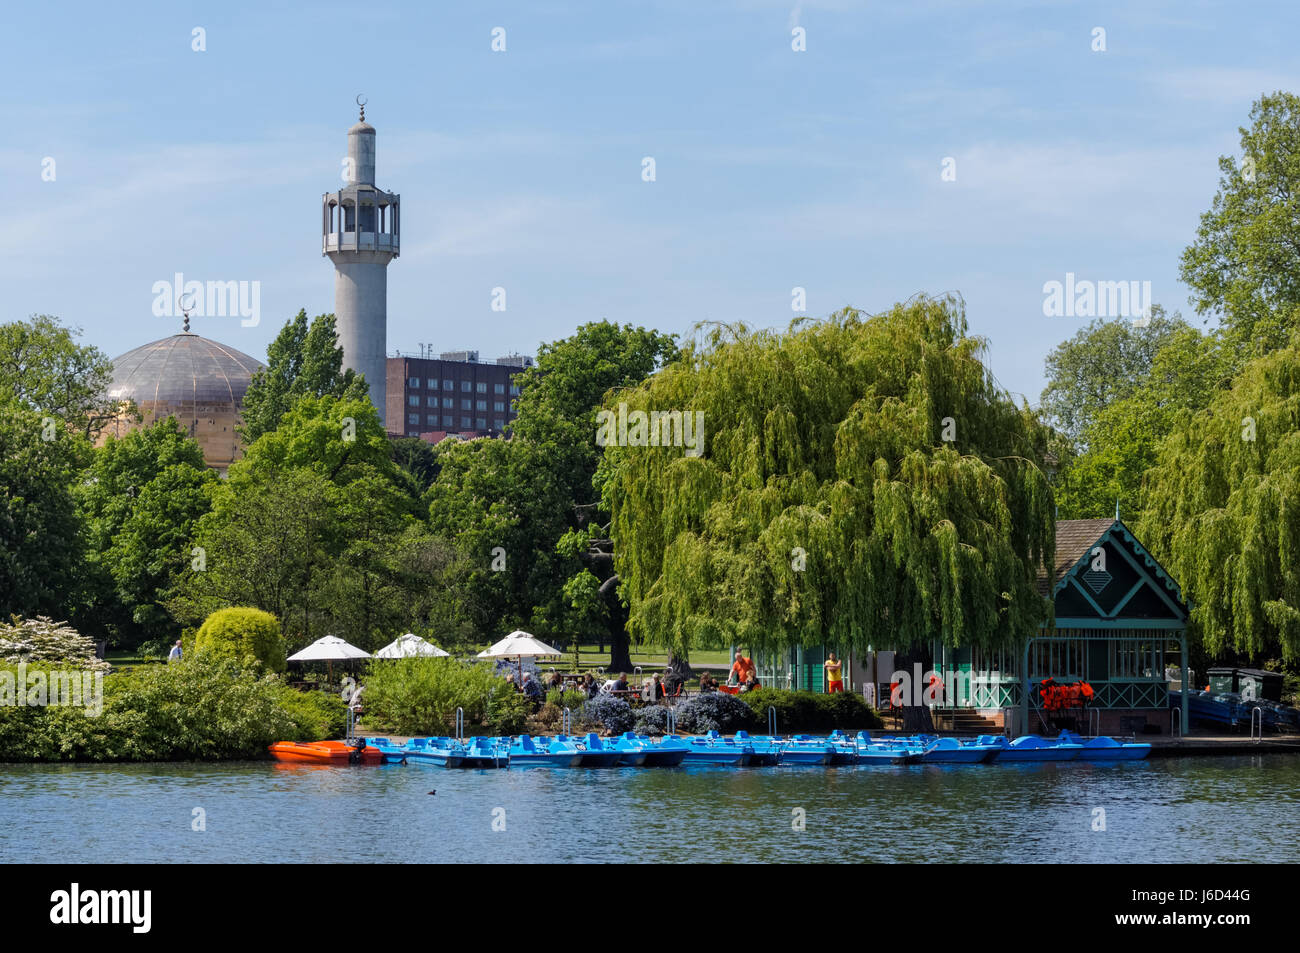 Lac de plaisance dans Regent's Park avec la mosquée centrale de Londres en arrière-plan, Londres, Angleterre, Royaume-Uni, UK Banque D'Images